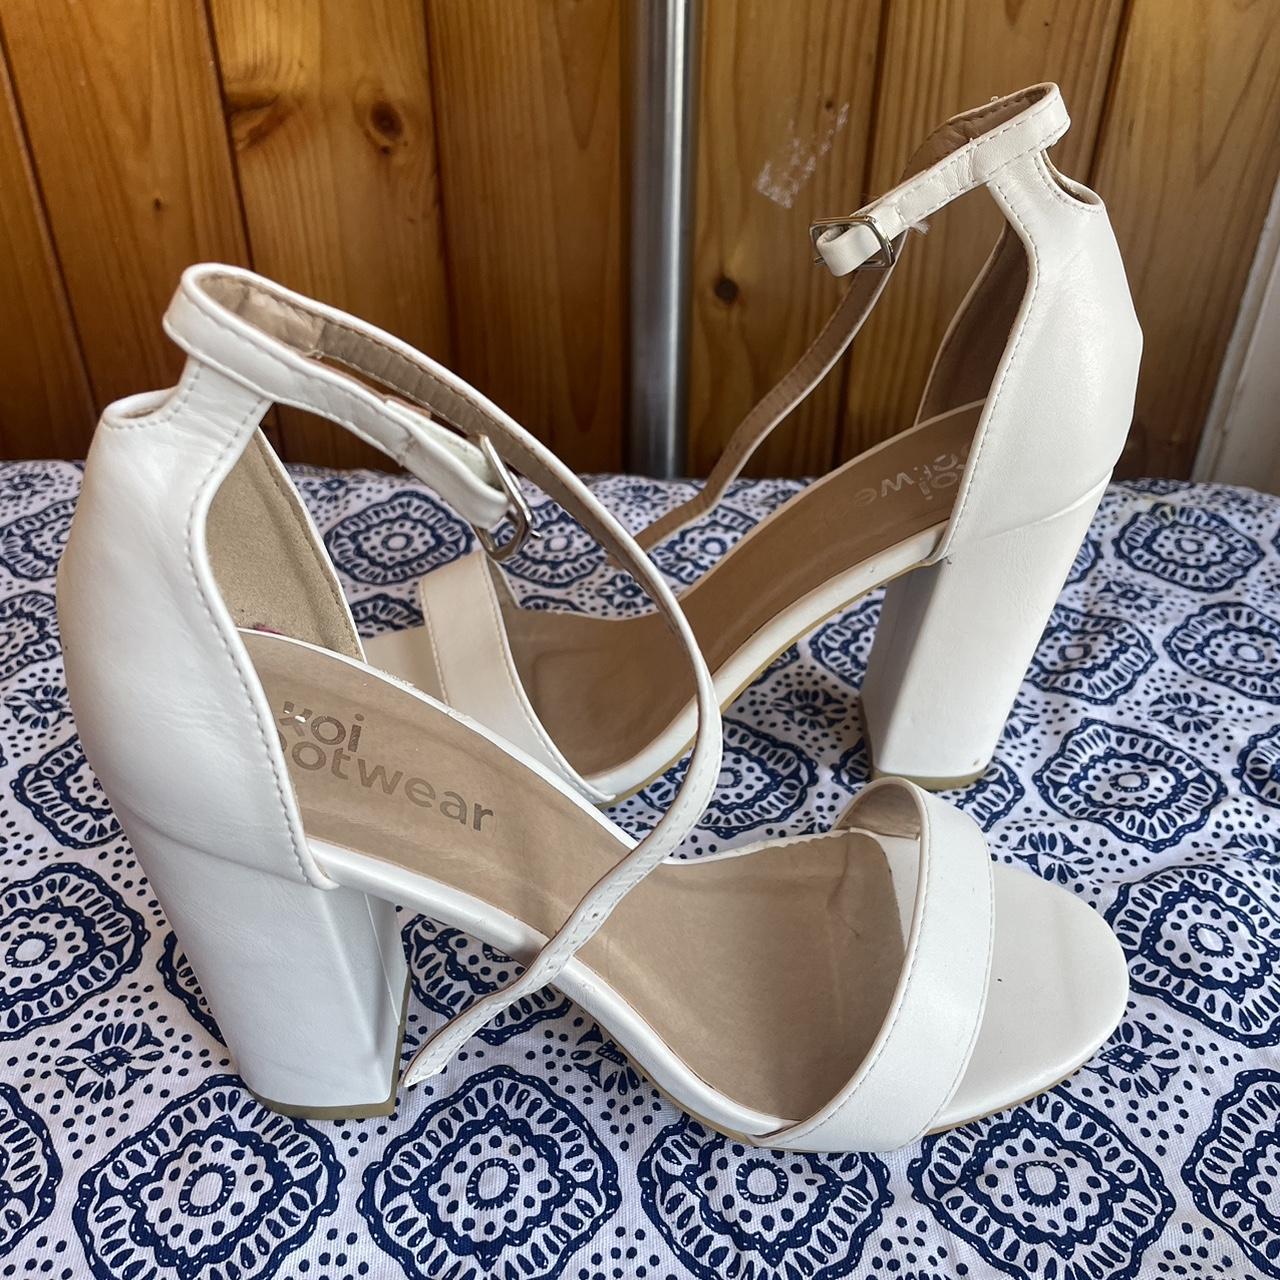 White KOI Footwear heels - Worn once - In good... - Depop